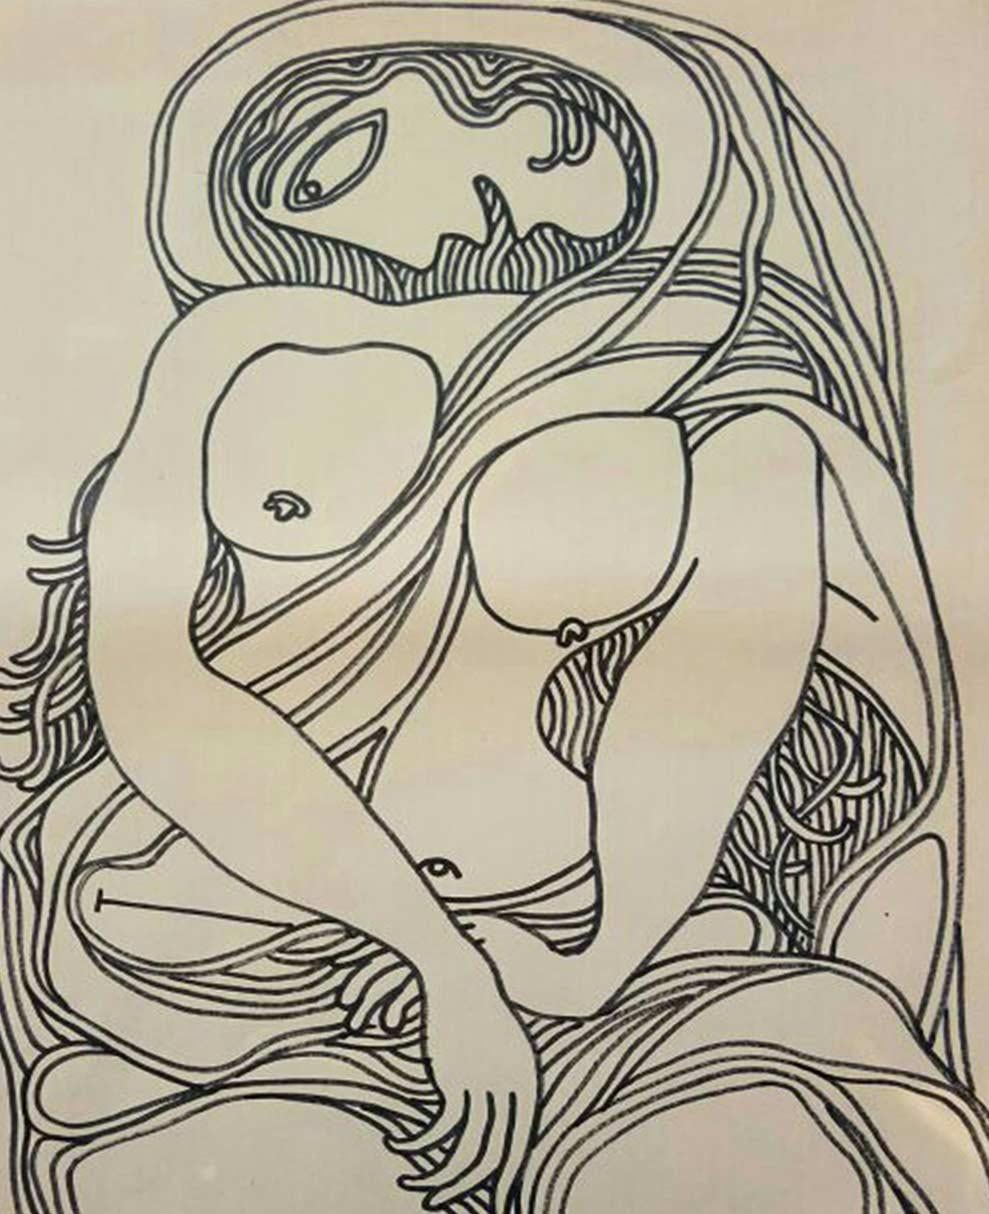 Femme nue, dessin, encre, marqueur sur papier de l'artiste indien moderne « En stock » - Art de Prakash Karmarkar